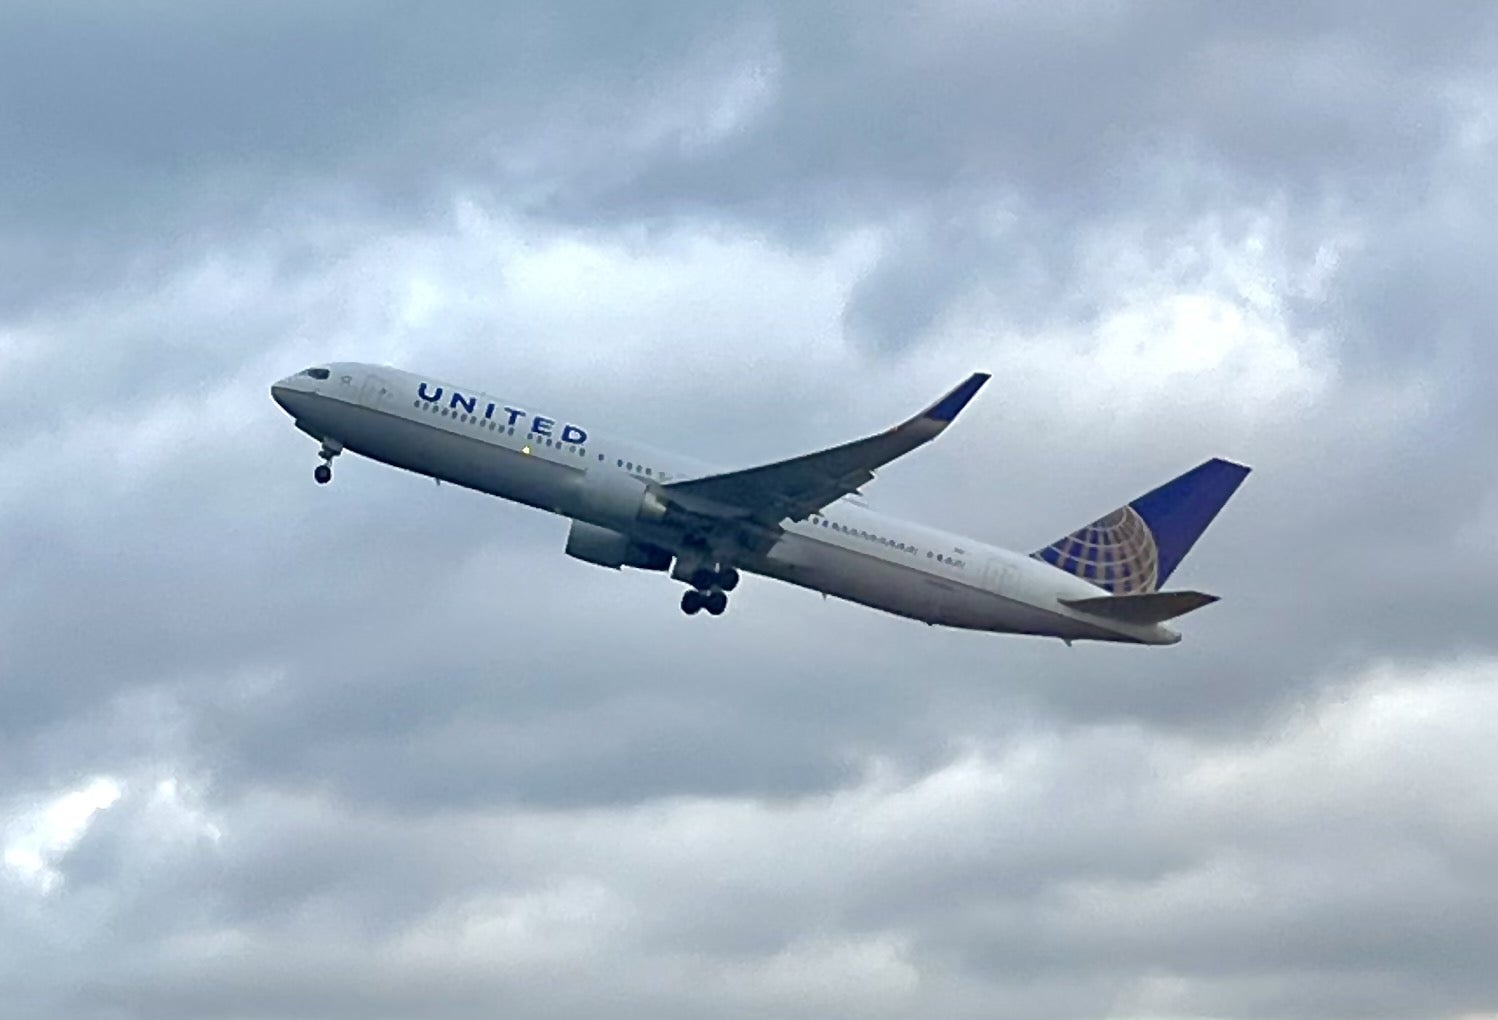 United Boeing 767 departing London Heathrow